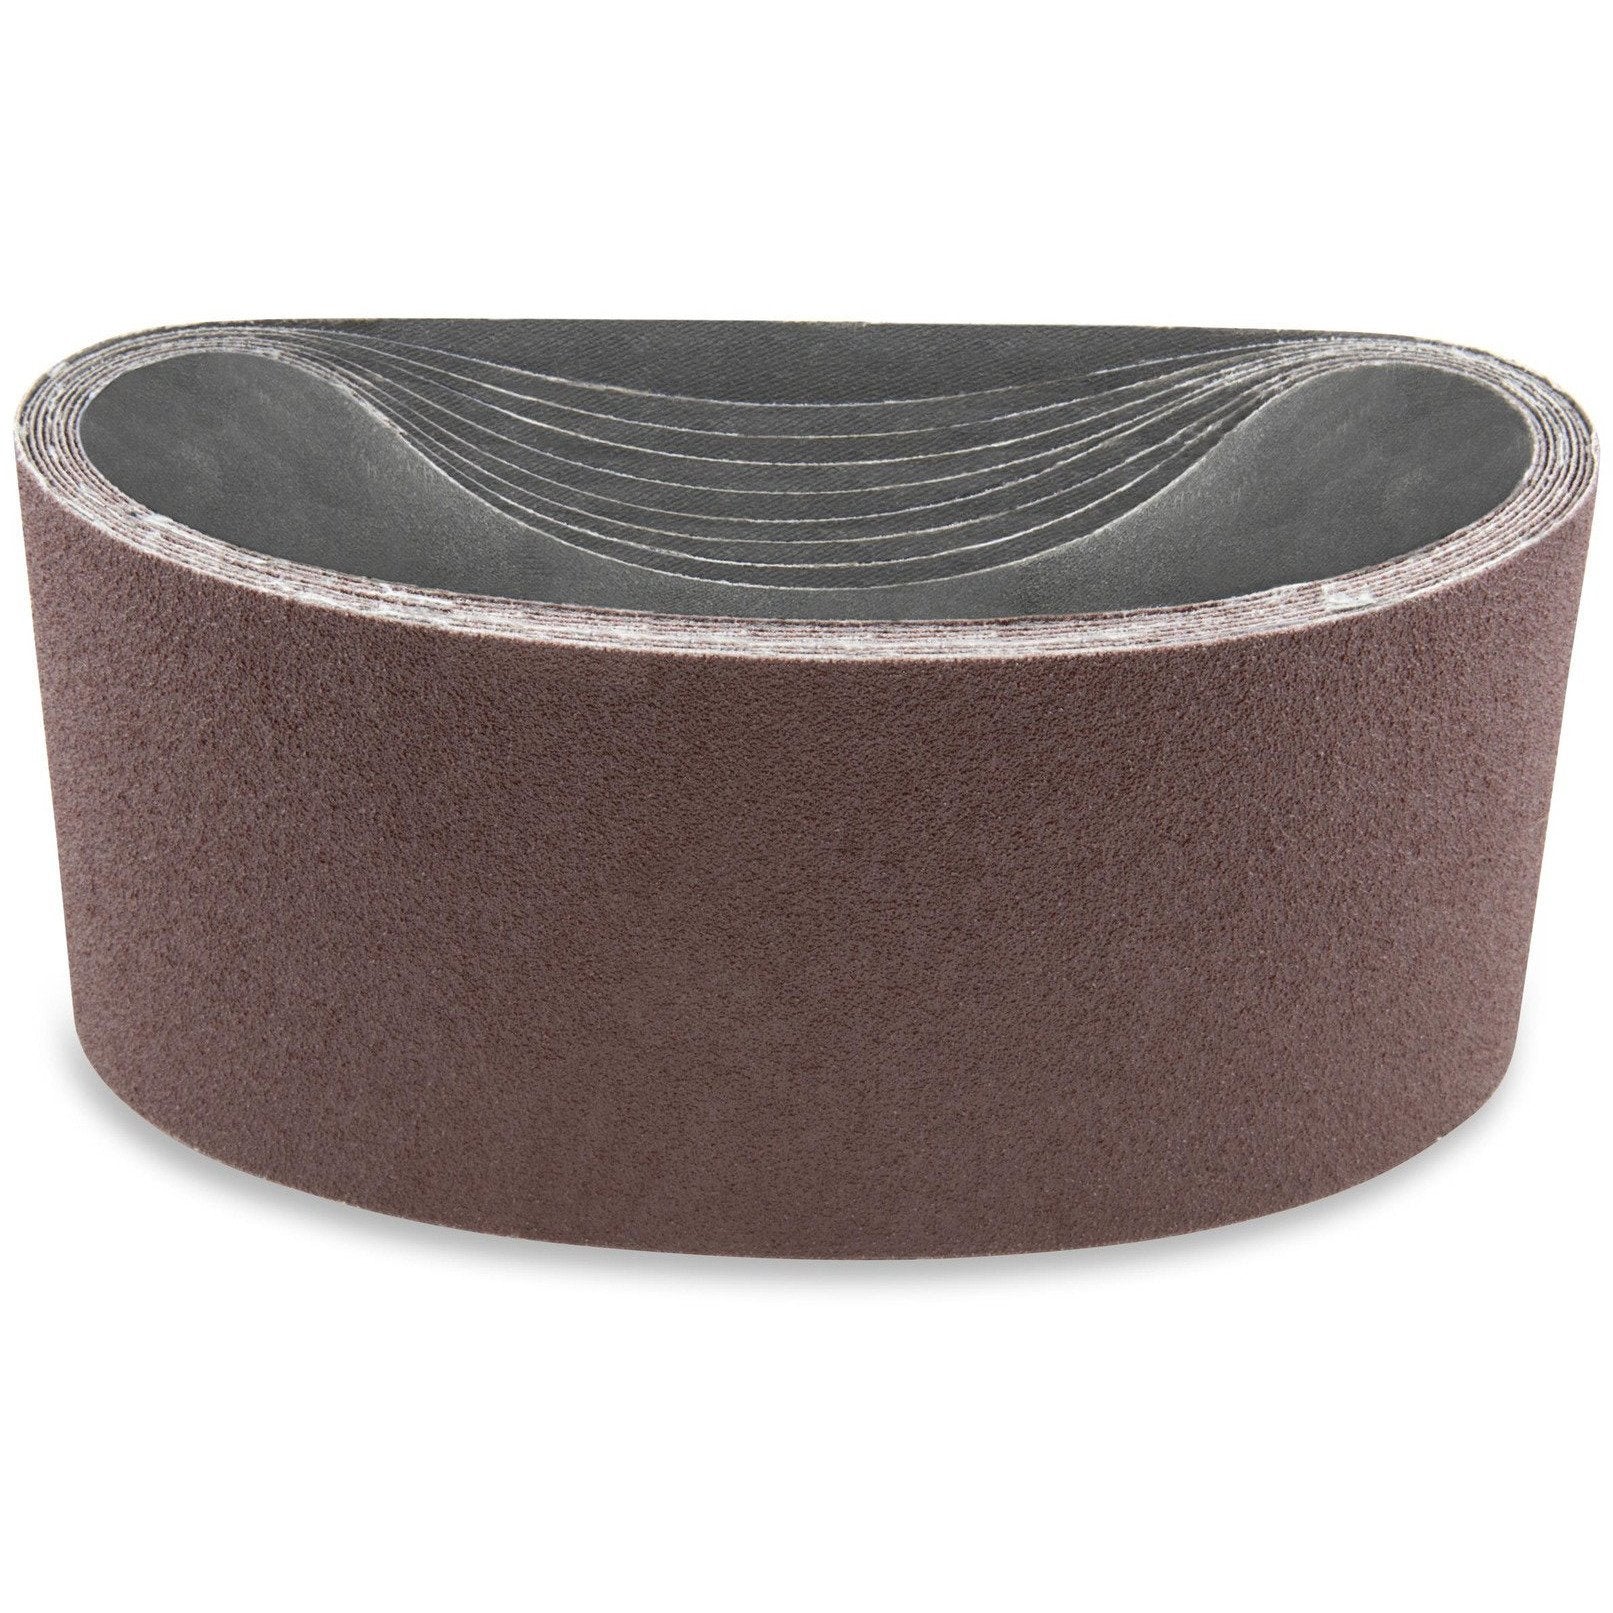 2 1/2 X 14 Inch Aluminum Oxide Metal Sanding Belts, 6 Pack - Red Label Abrasives